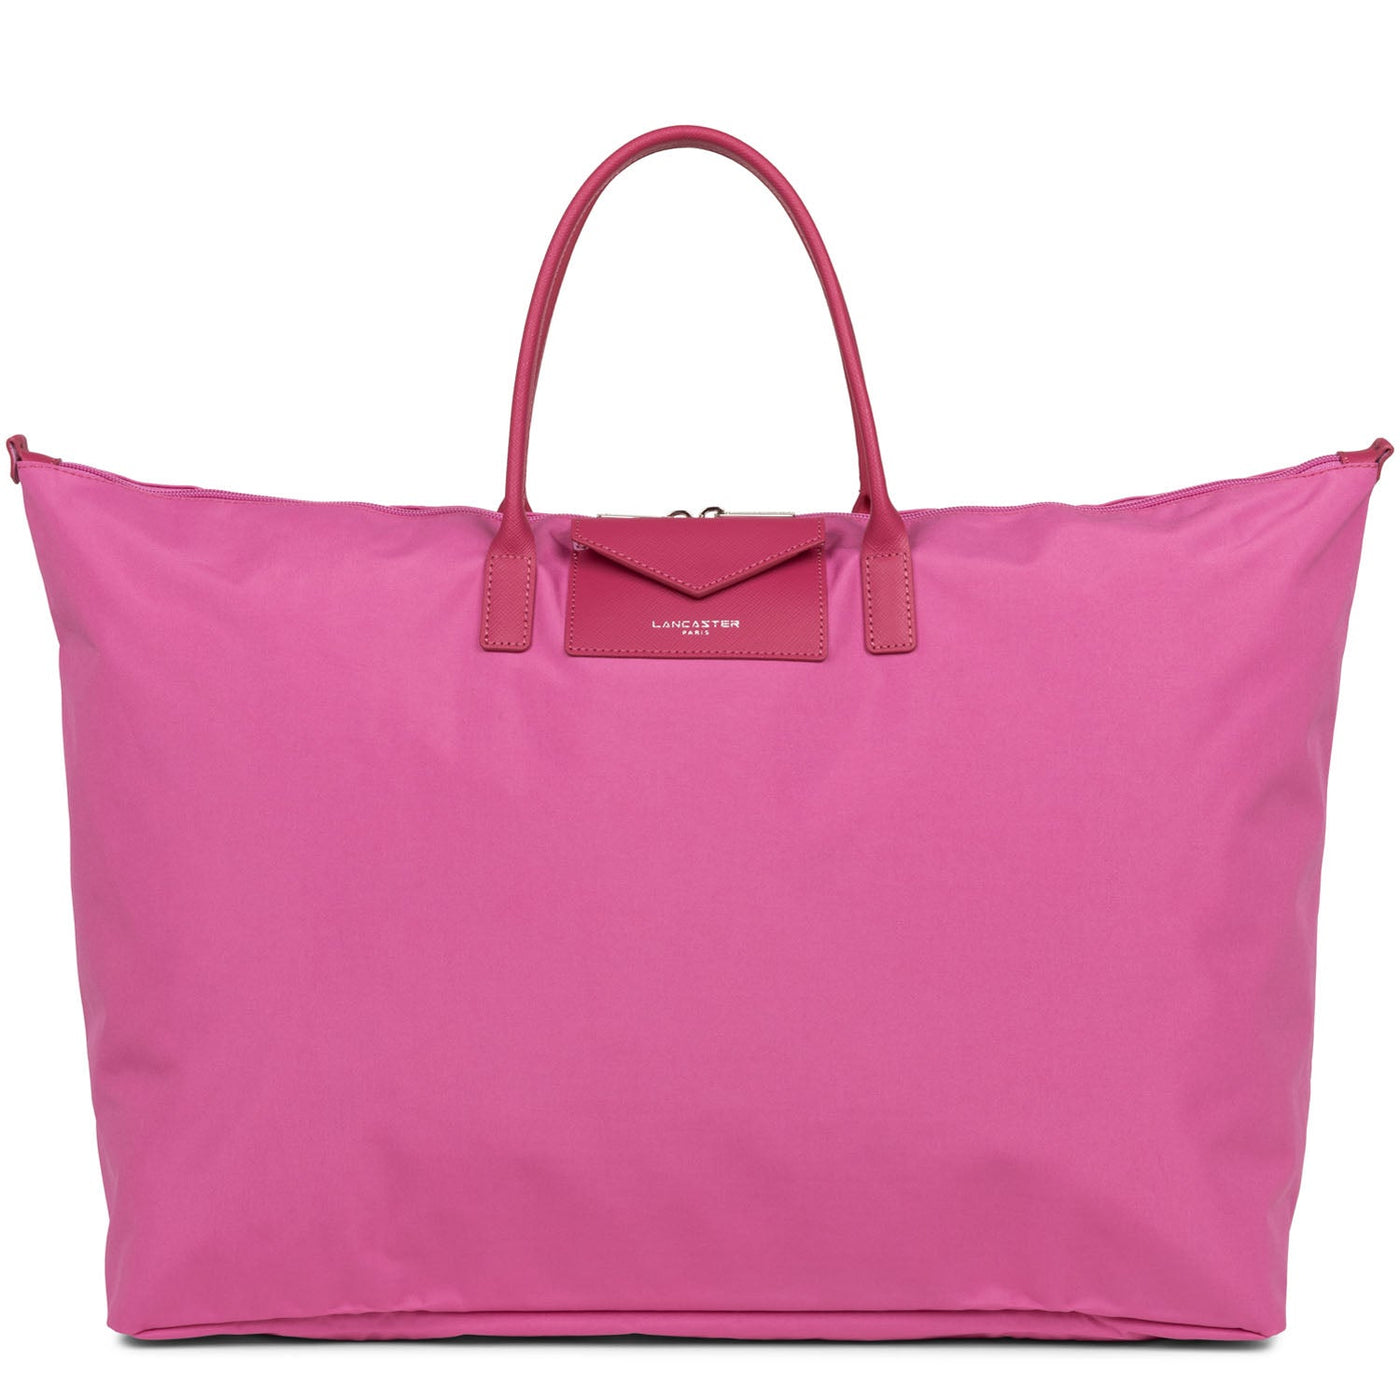 weekender bag - smart kba #couleur_fuxia